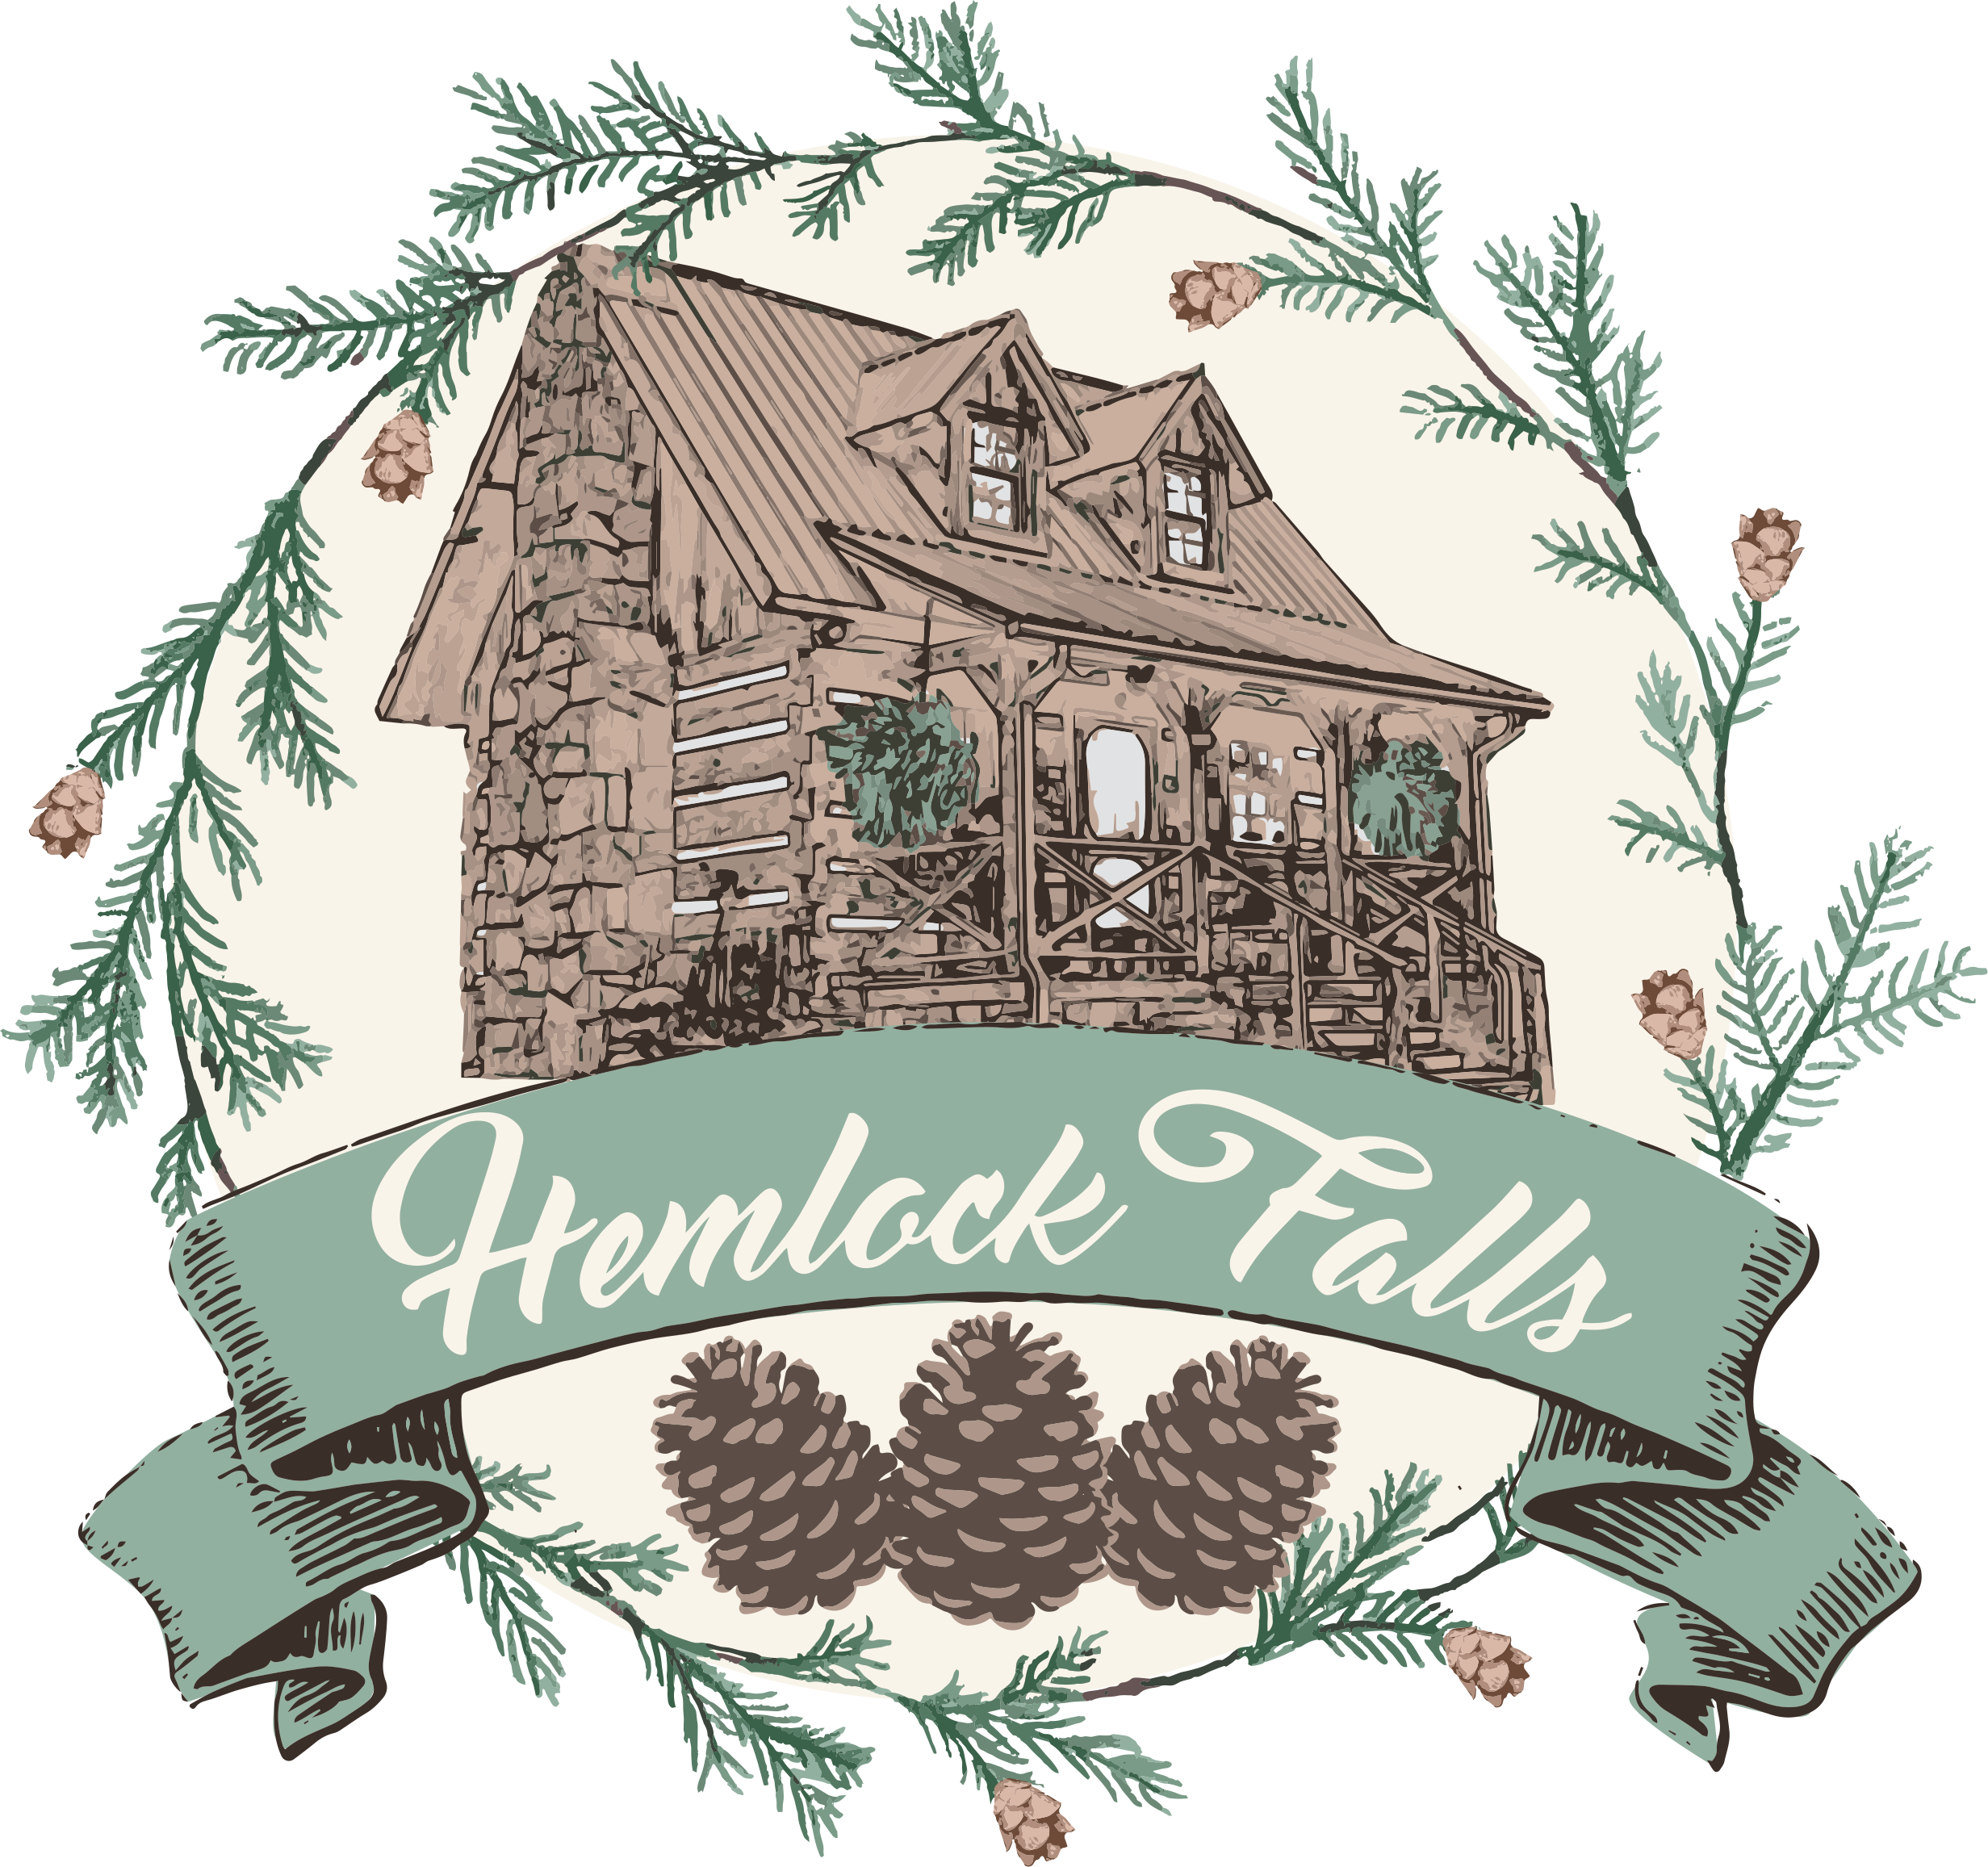 Hemlock Falls